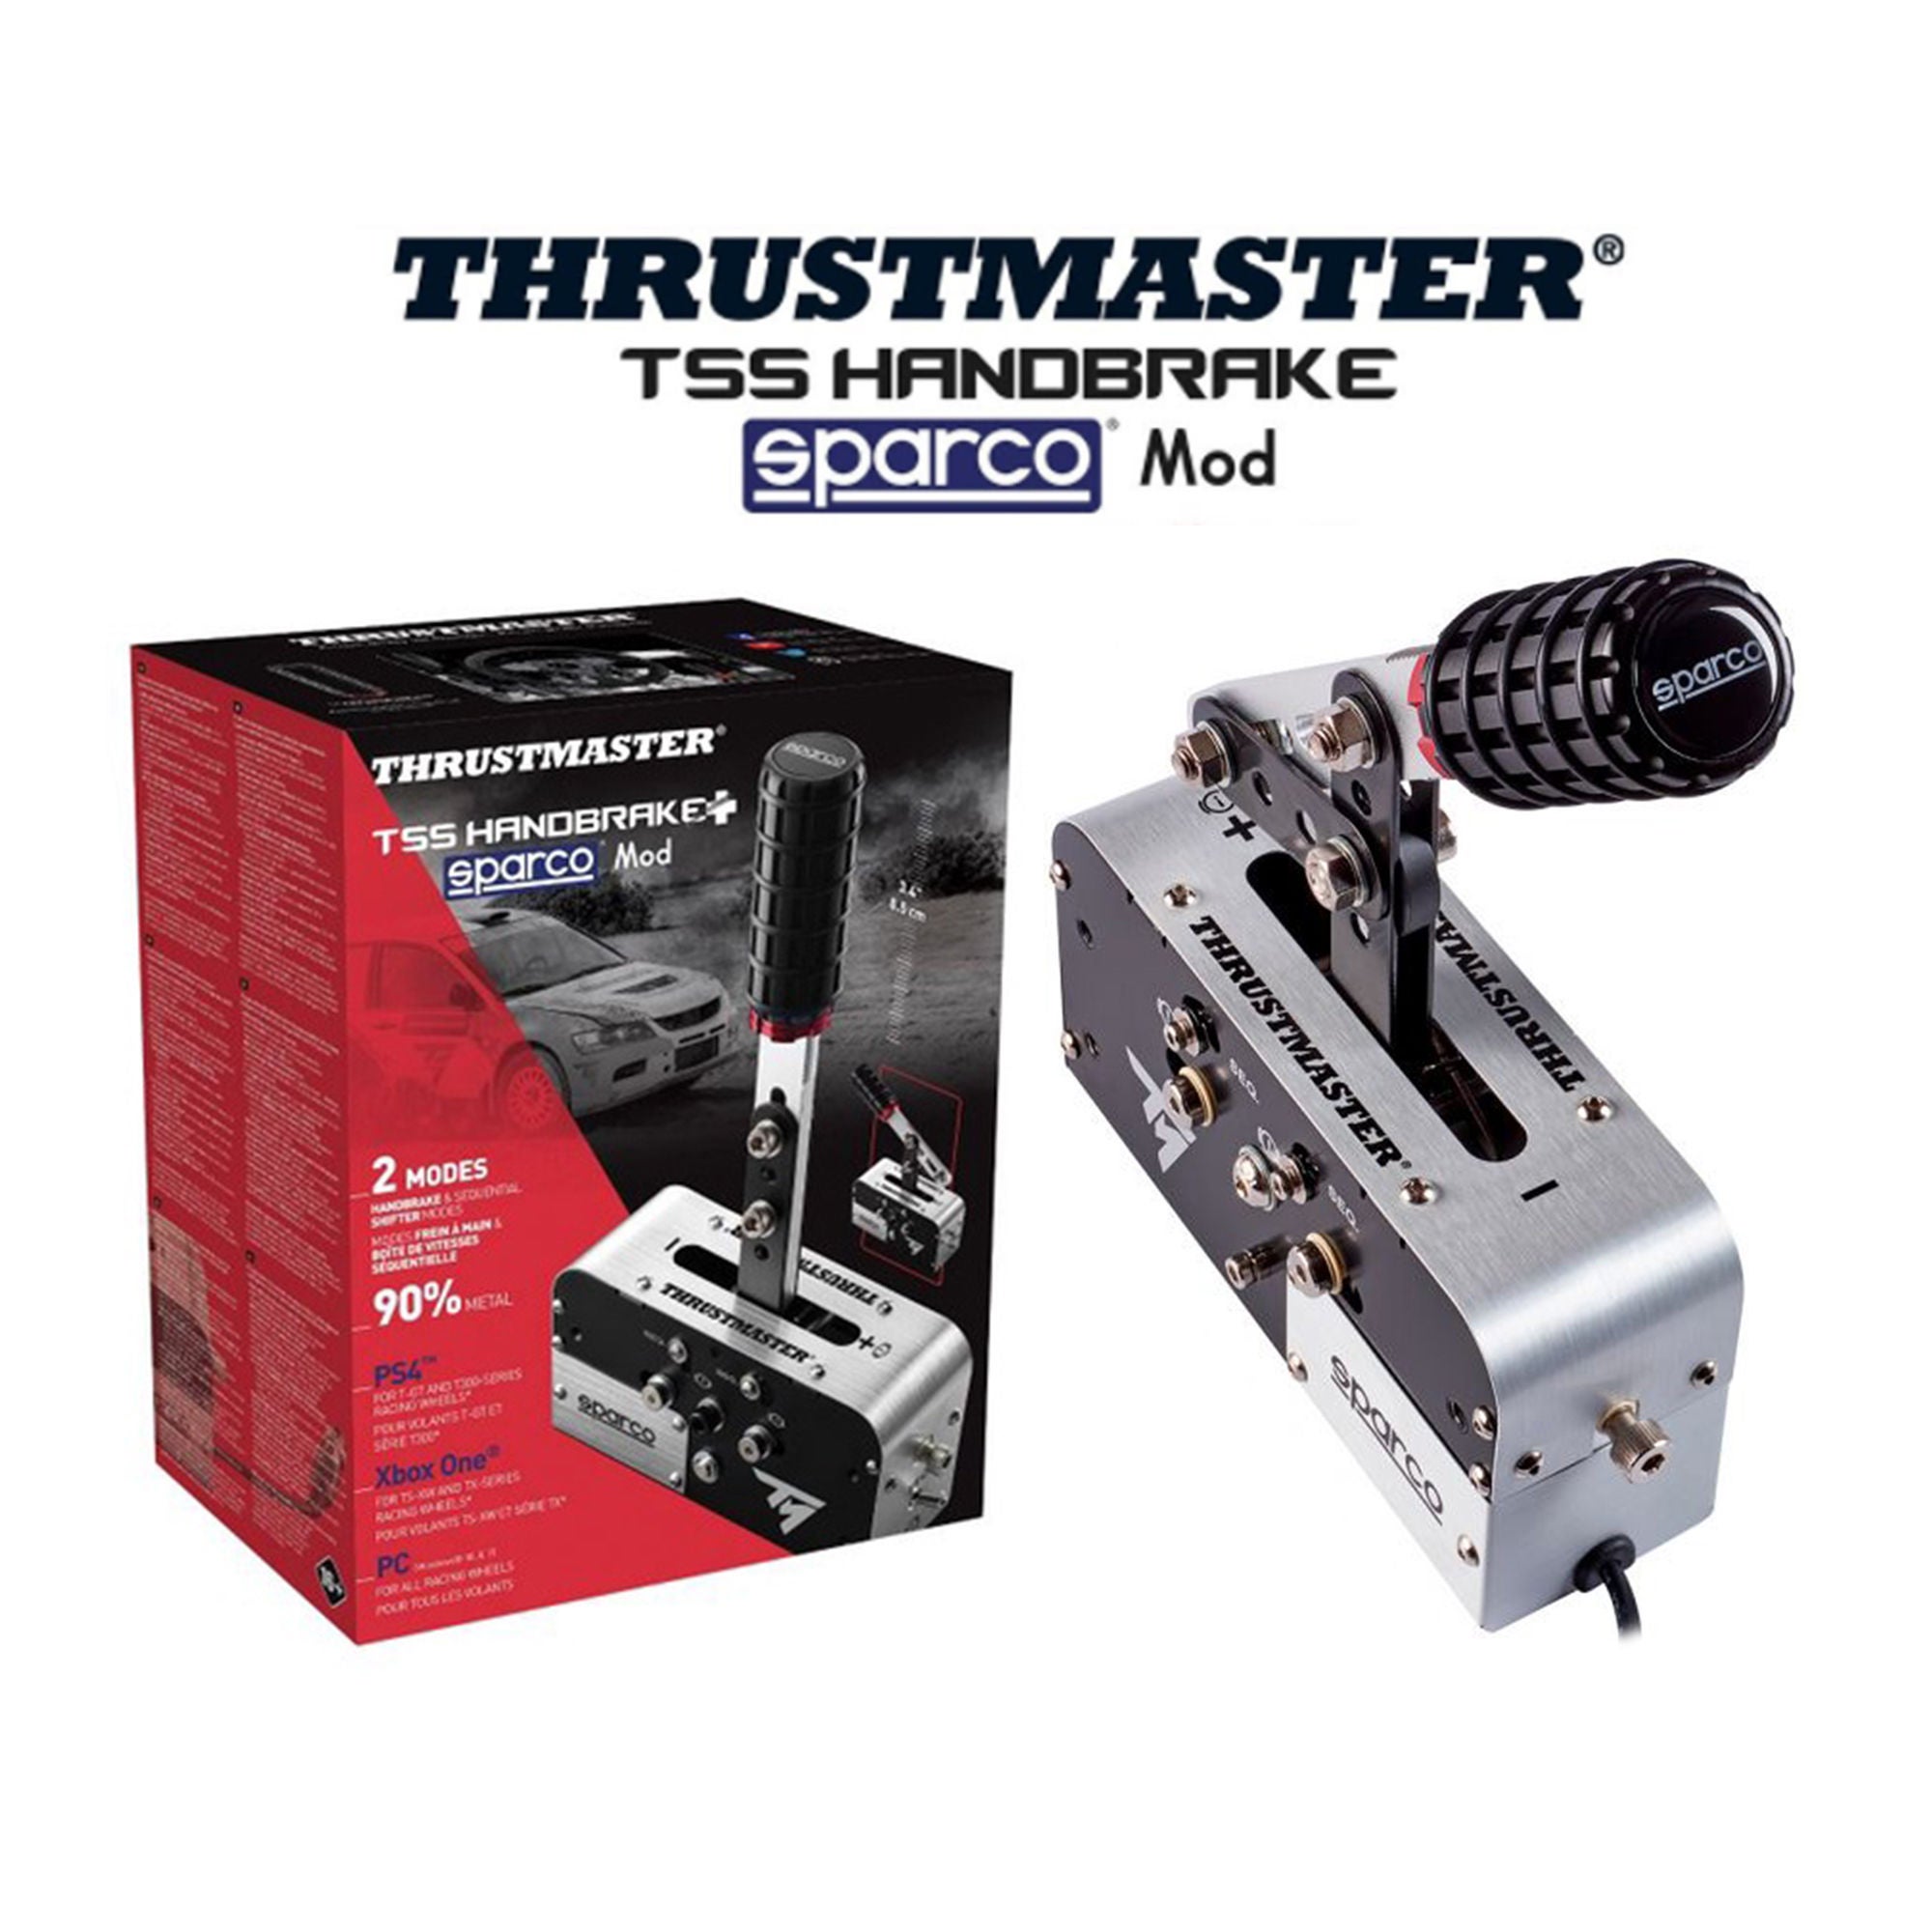 4.0% OFF on THRUSTMASTER Thrustmaster TSS Handbrake Sparco Mod +